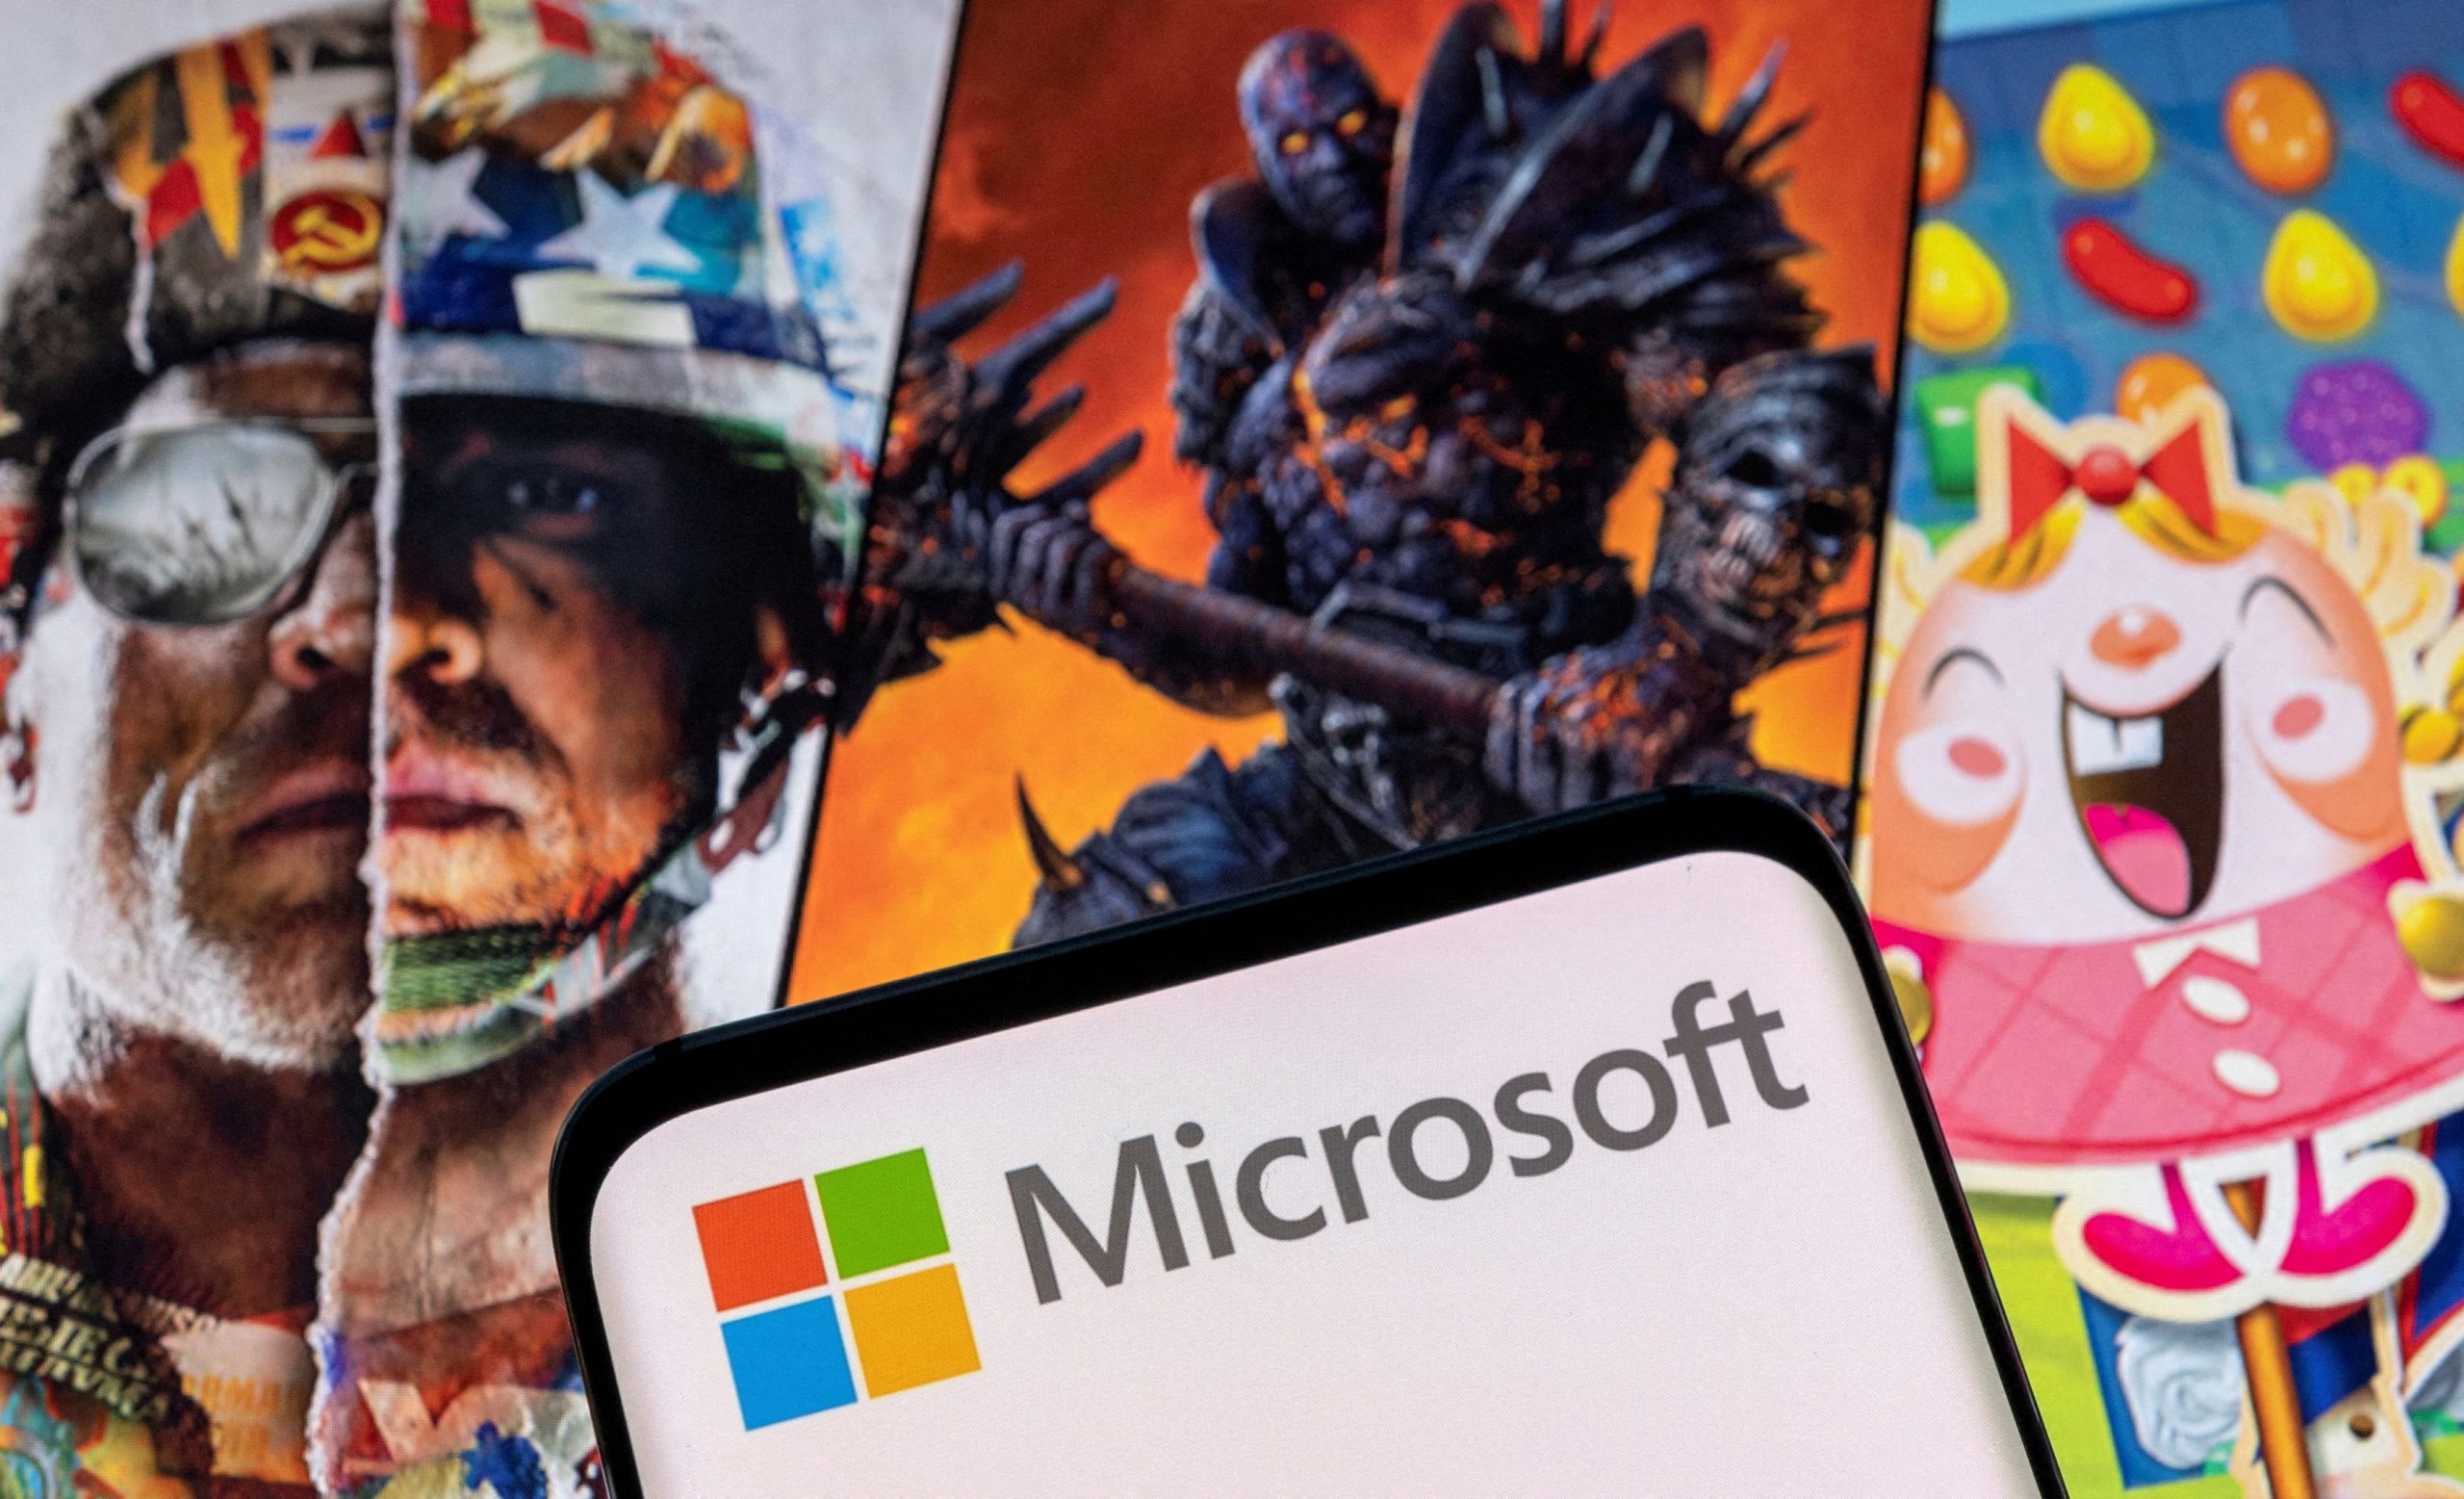 ΗΠΑ: Η αρχή ανταγωνισμού ζητάει να ανασταλεί η εξαγορά της Activision από τη Microsoft